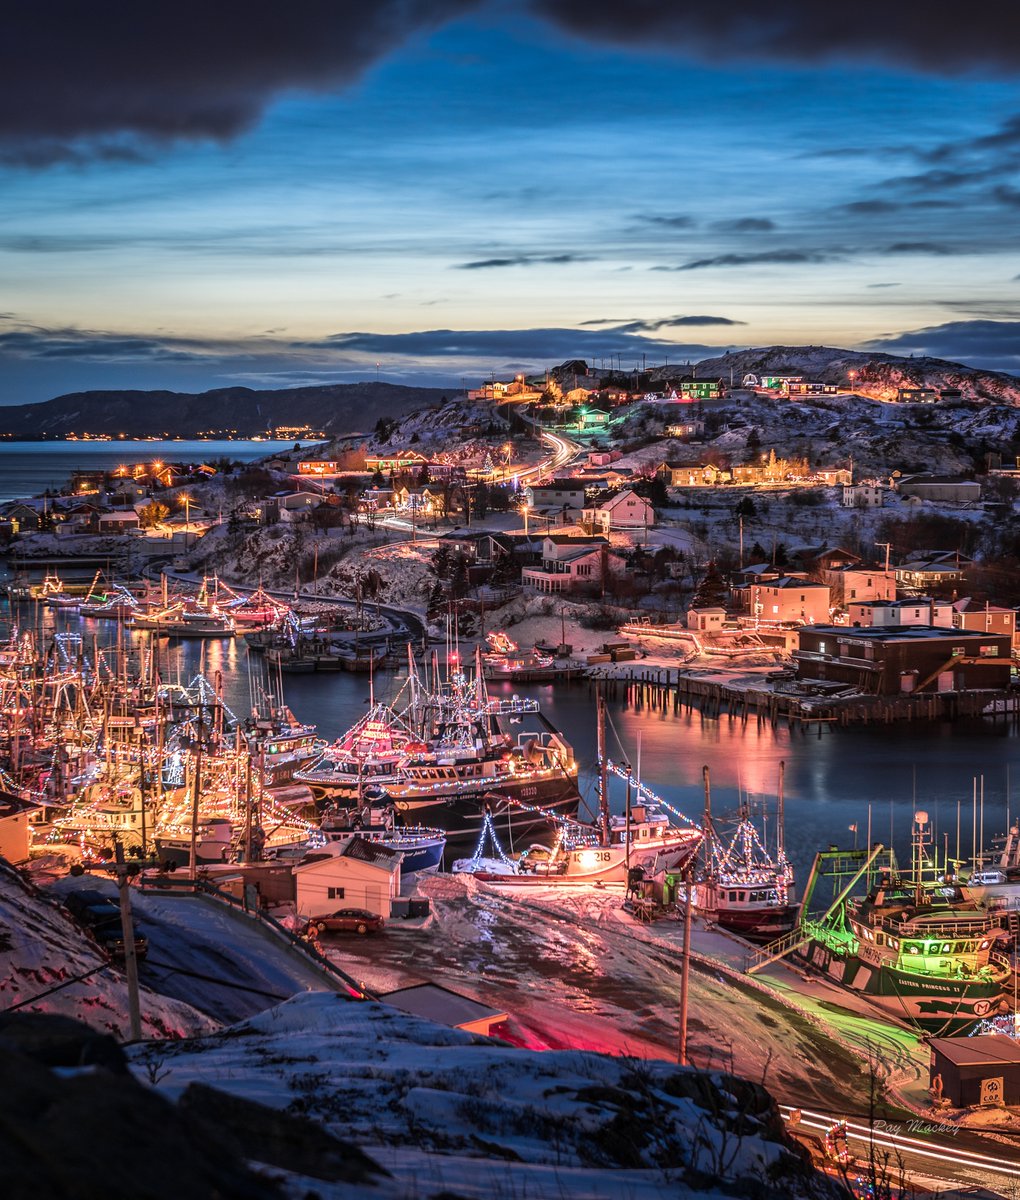 Port de Grave, Newfoundland. #Boatlighting #Newfoundland #xmasdecor #explorenl #Canada #nfld #comehome2022 #festive #explorecanada Have a great evening everyone!!